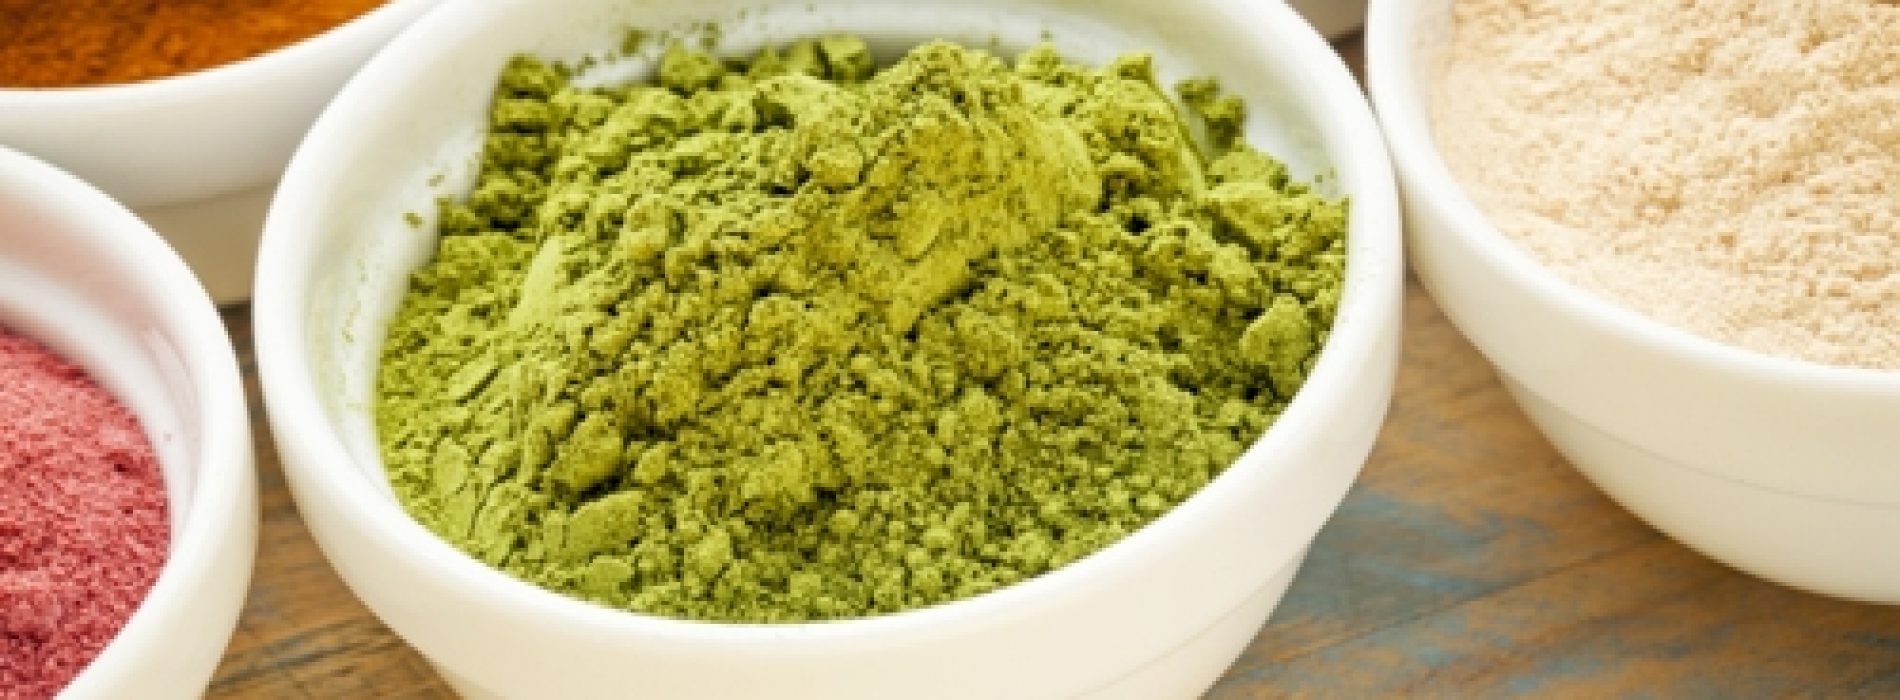 Moringa: de allernieuwste foodhype die wel 17 keer zoveel calcium bevat dan melk!